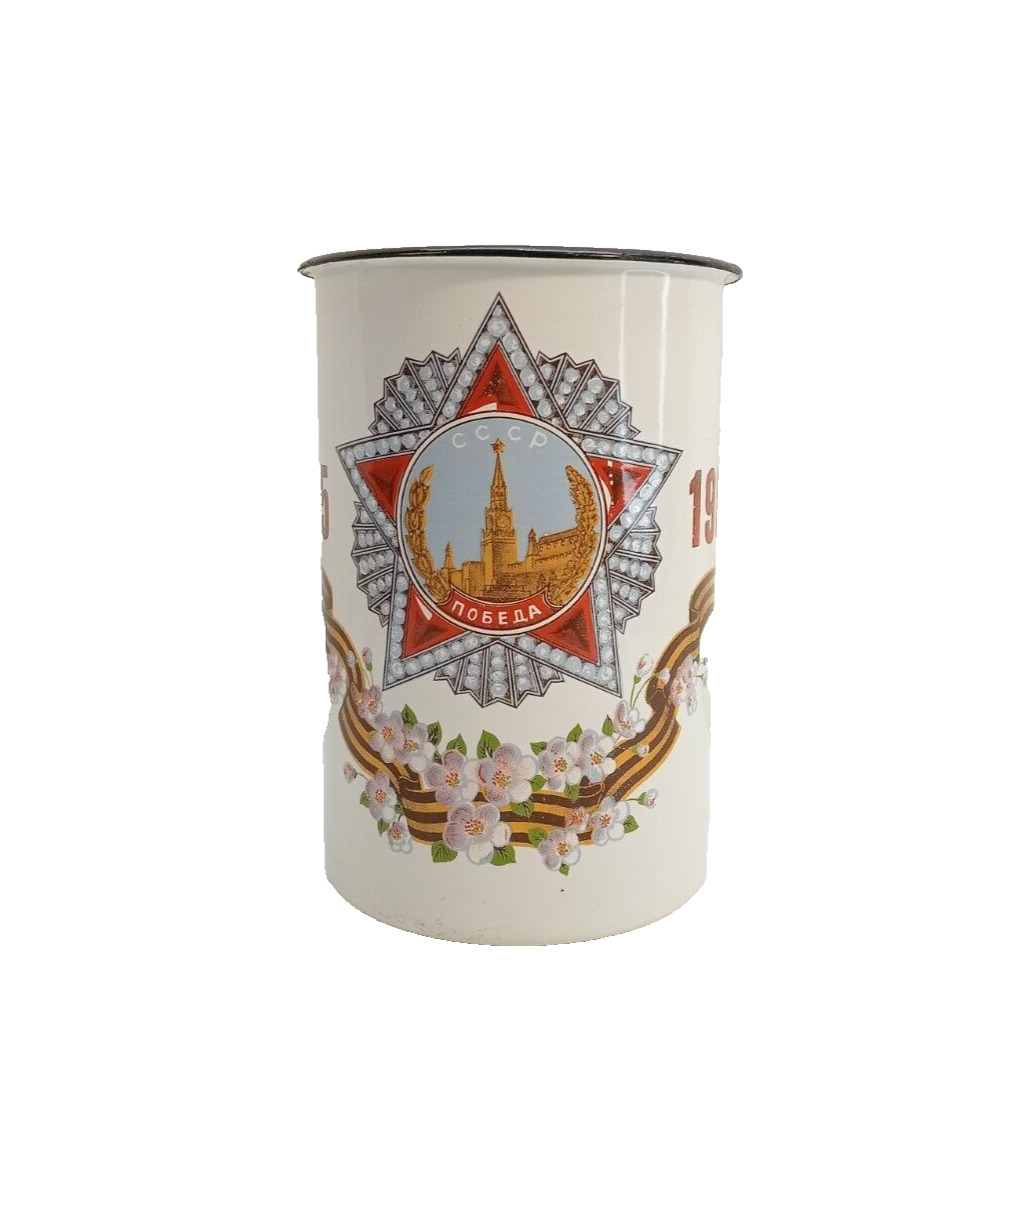 Mug 40 years of Victory Enamel 1945-1985 1.5 liters USSR Soviet Vintage Enameled